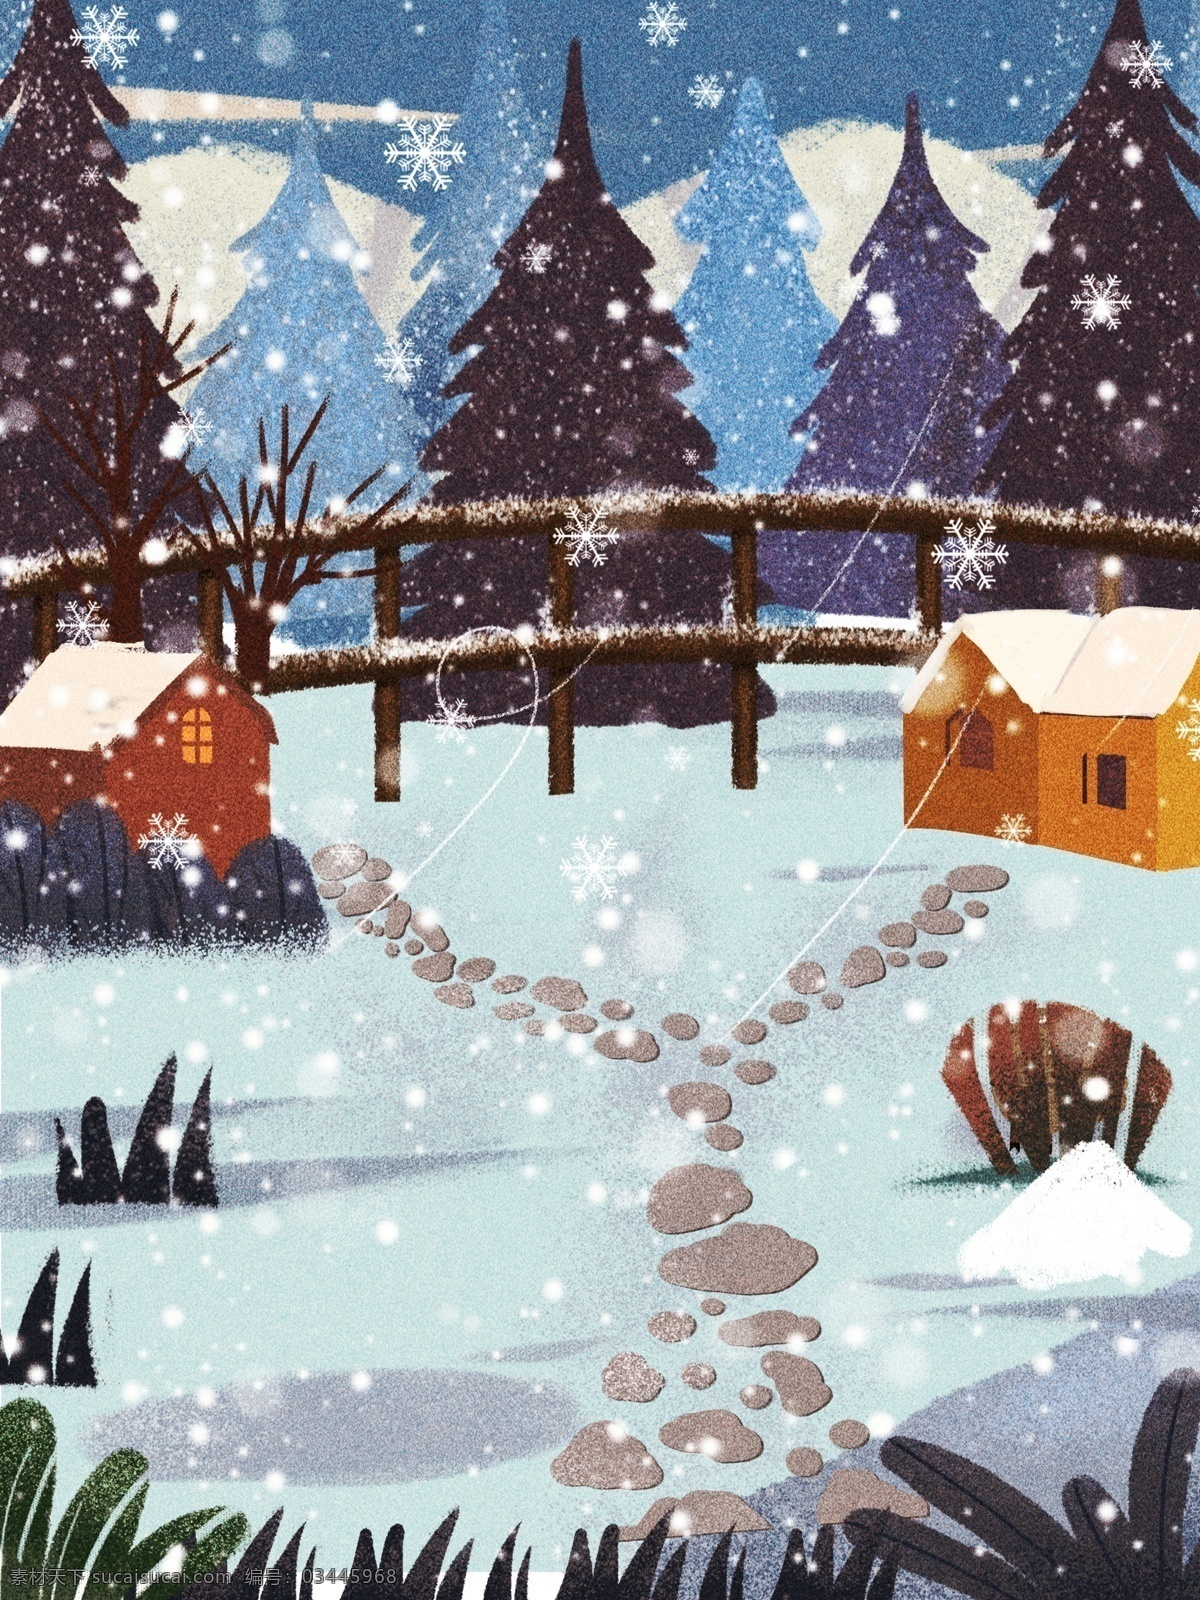 唯美 冬天 下 大雪 背景 图 风景 大雪节气 小雪 中国风节气 背景设计 雪景 彩绘背景 房屋